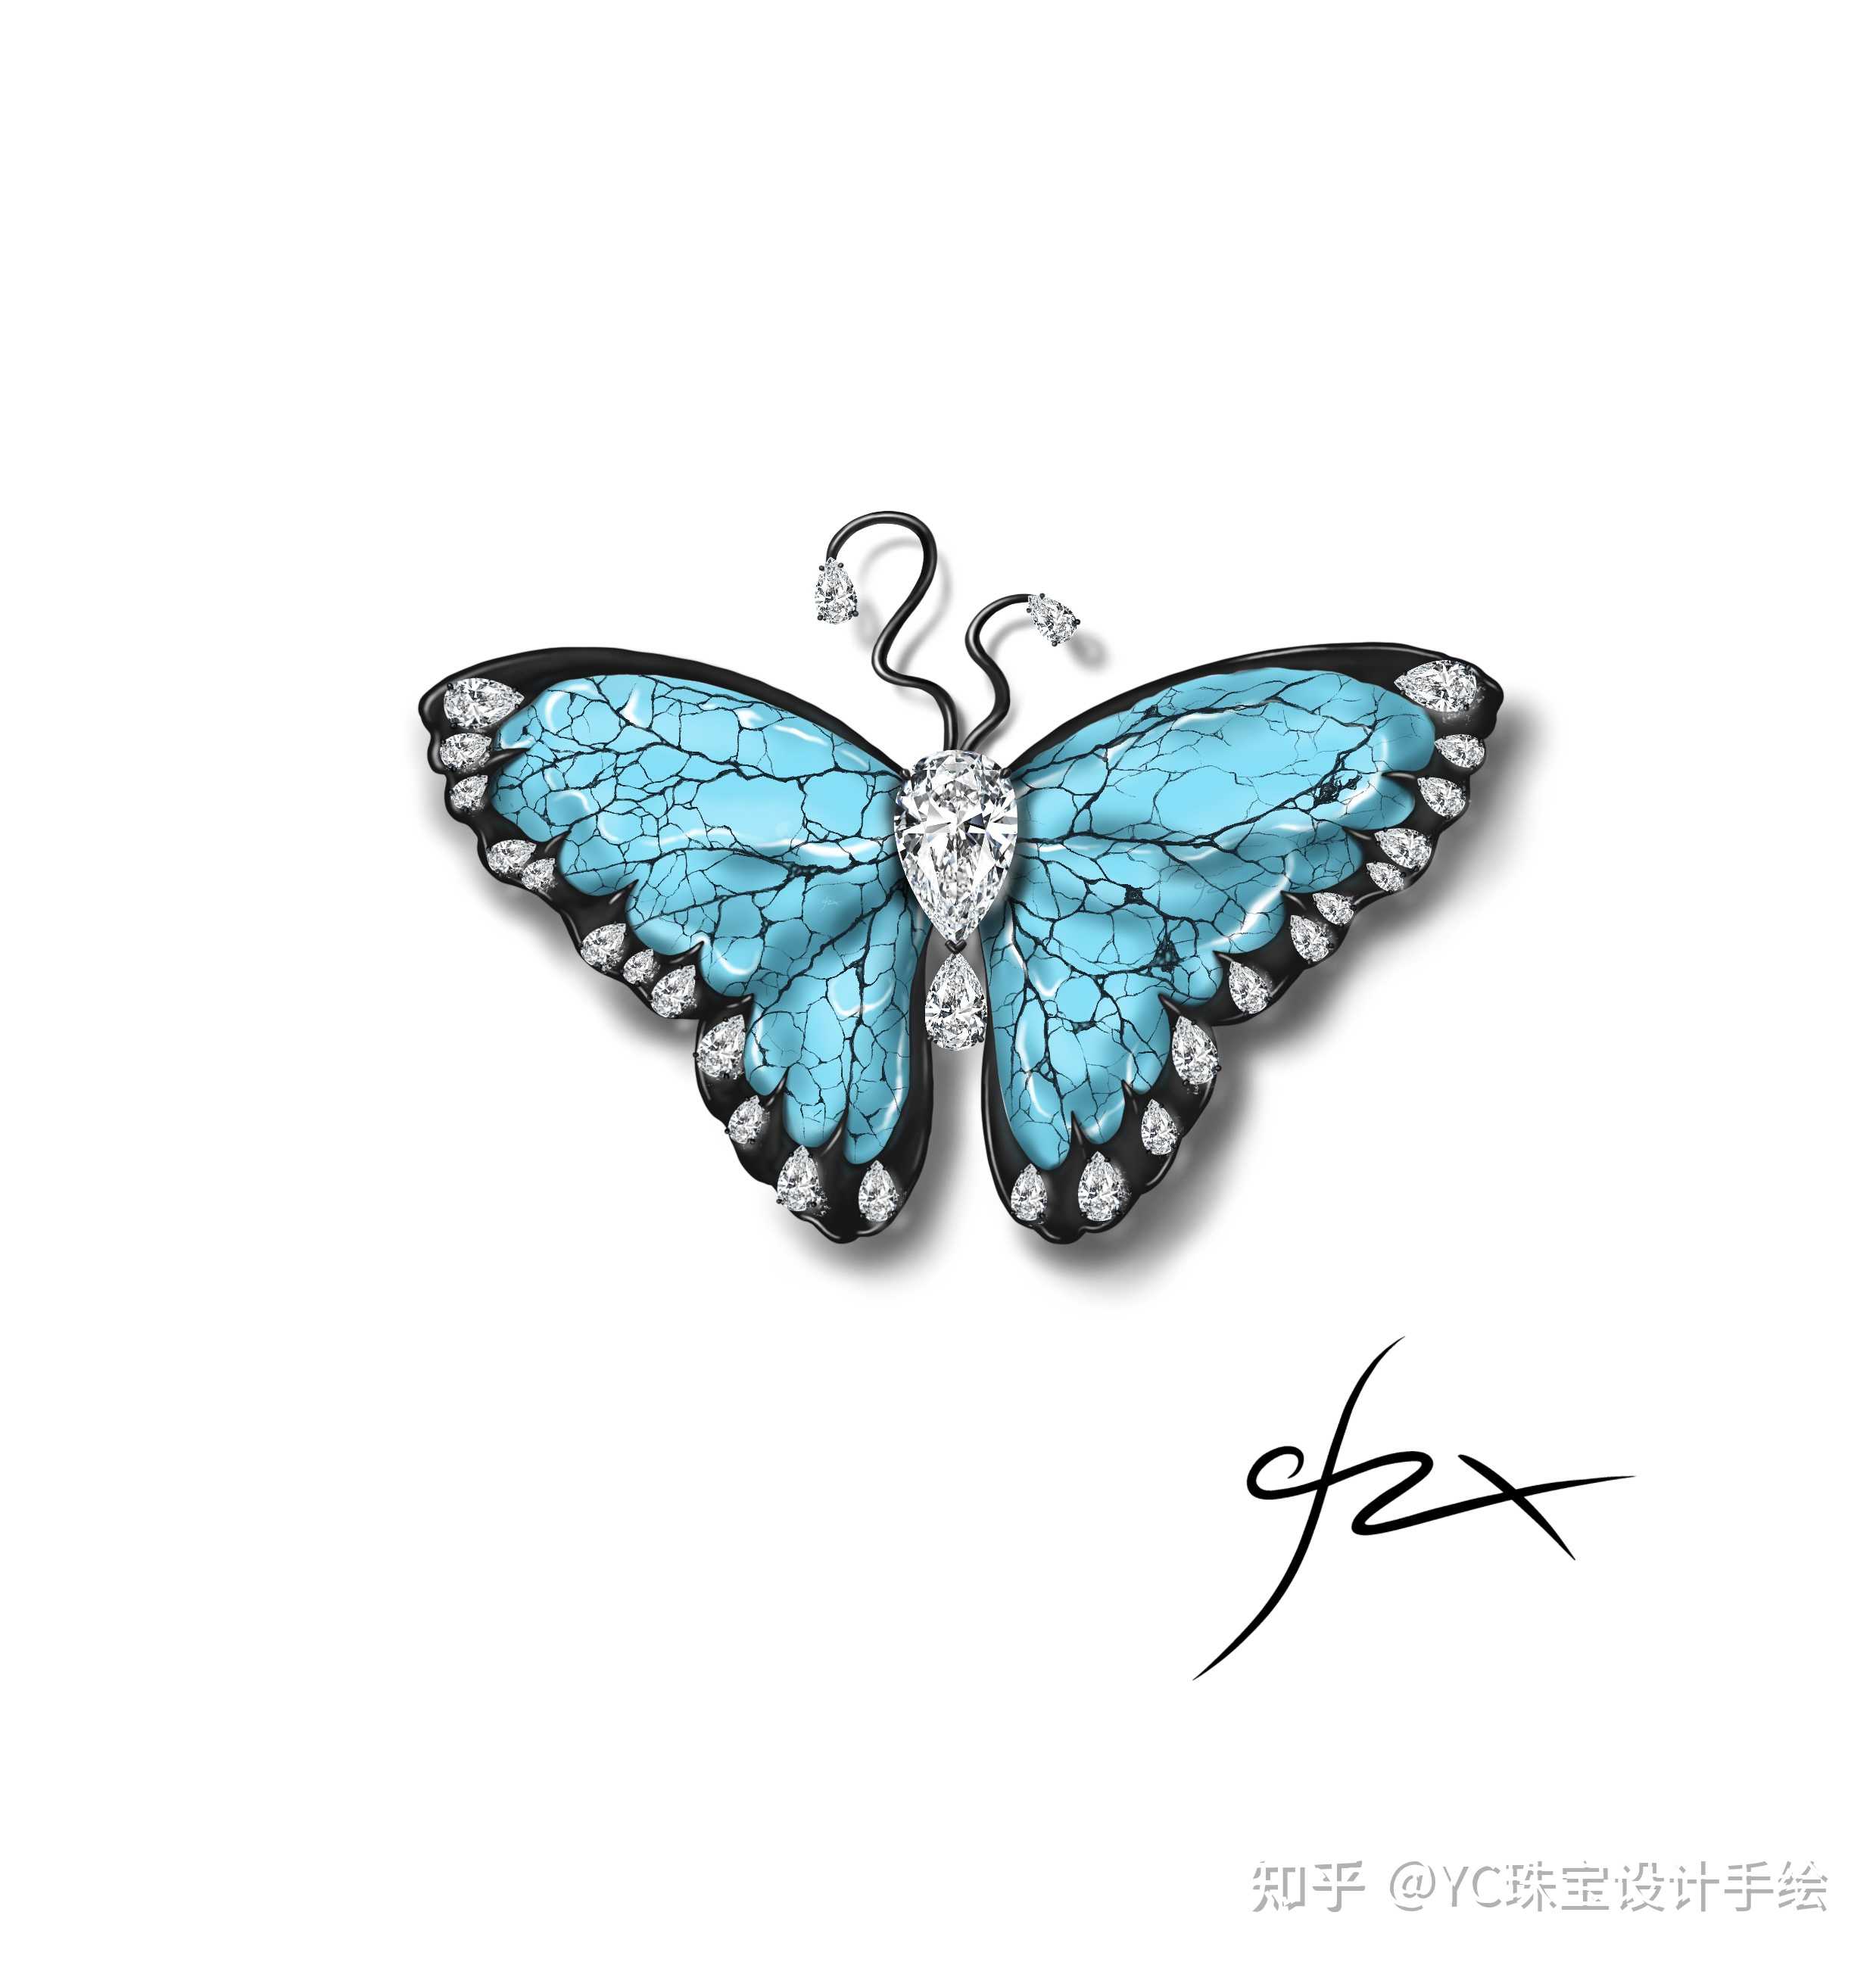 yc珠宝设计手绘 的想法: 曾宪沨 蝴蝶胸针设计 绿松石 #珠宝手绘